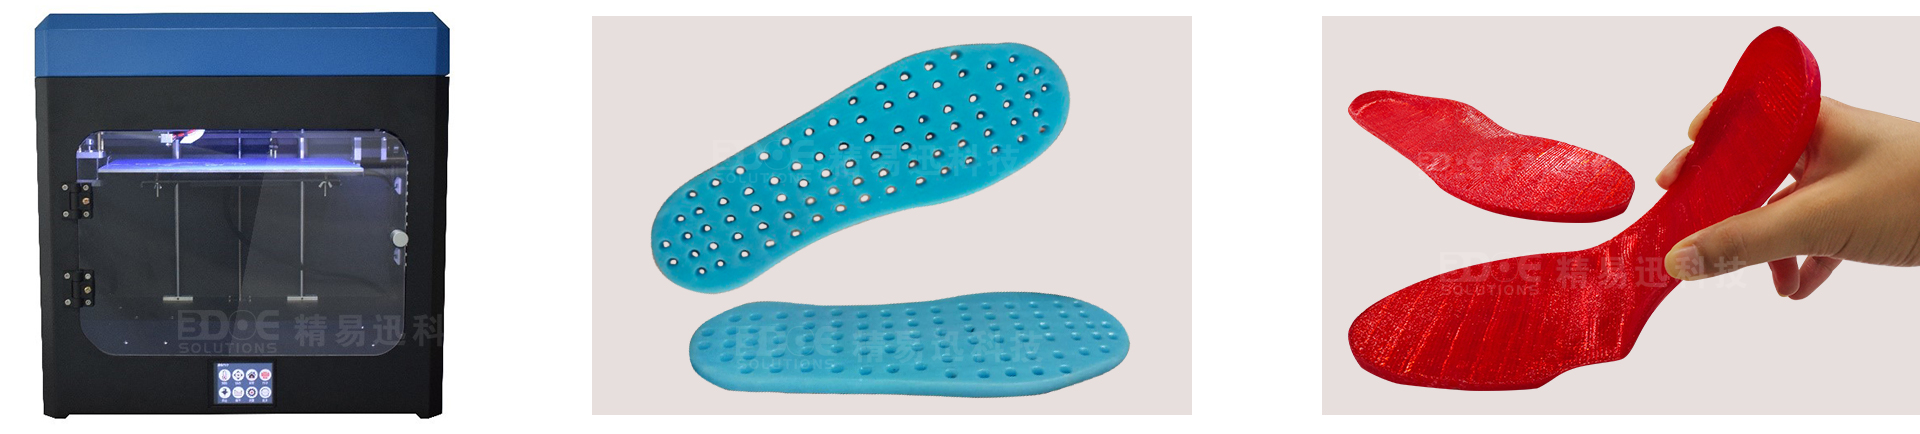 3D打印机,三维打印tpu材料,矫正鞋垫,脚垫矫正.jpg